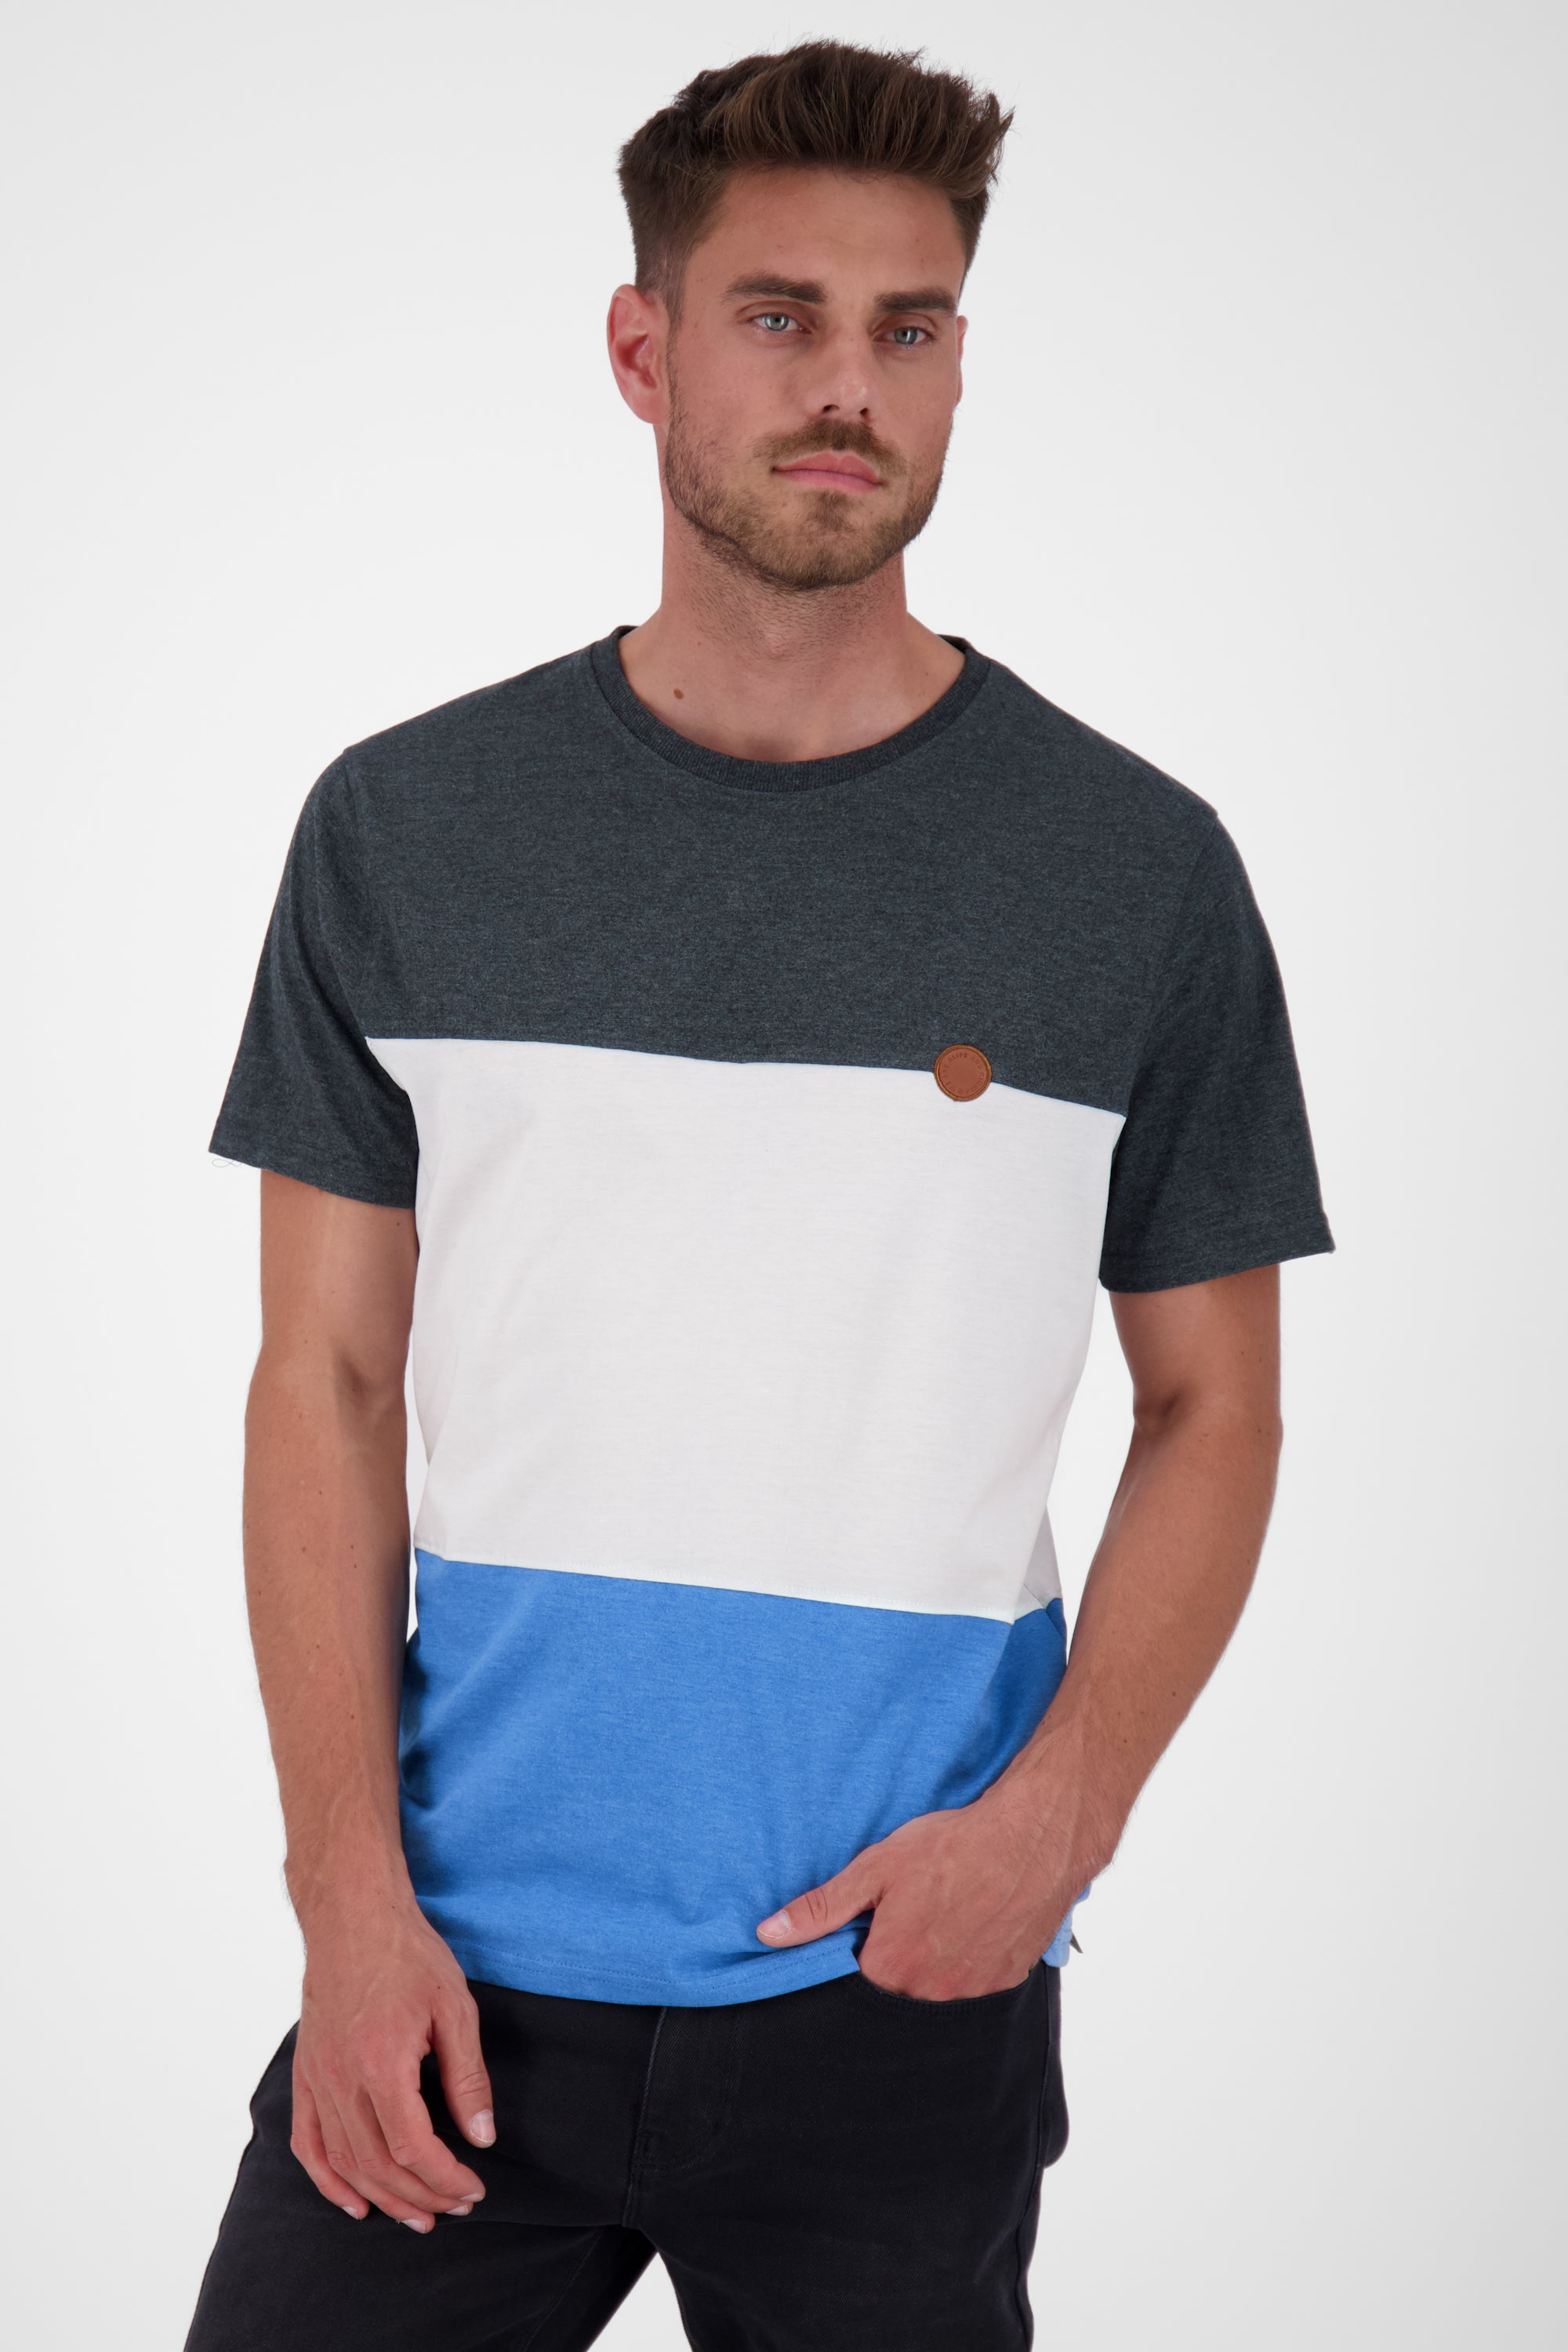 BenAK A T-Shirt Herren mit Colorblock Blau